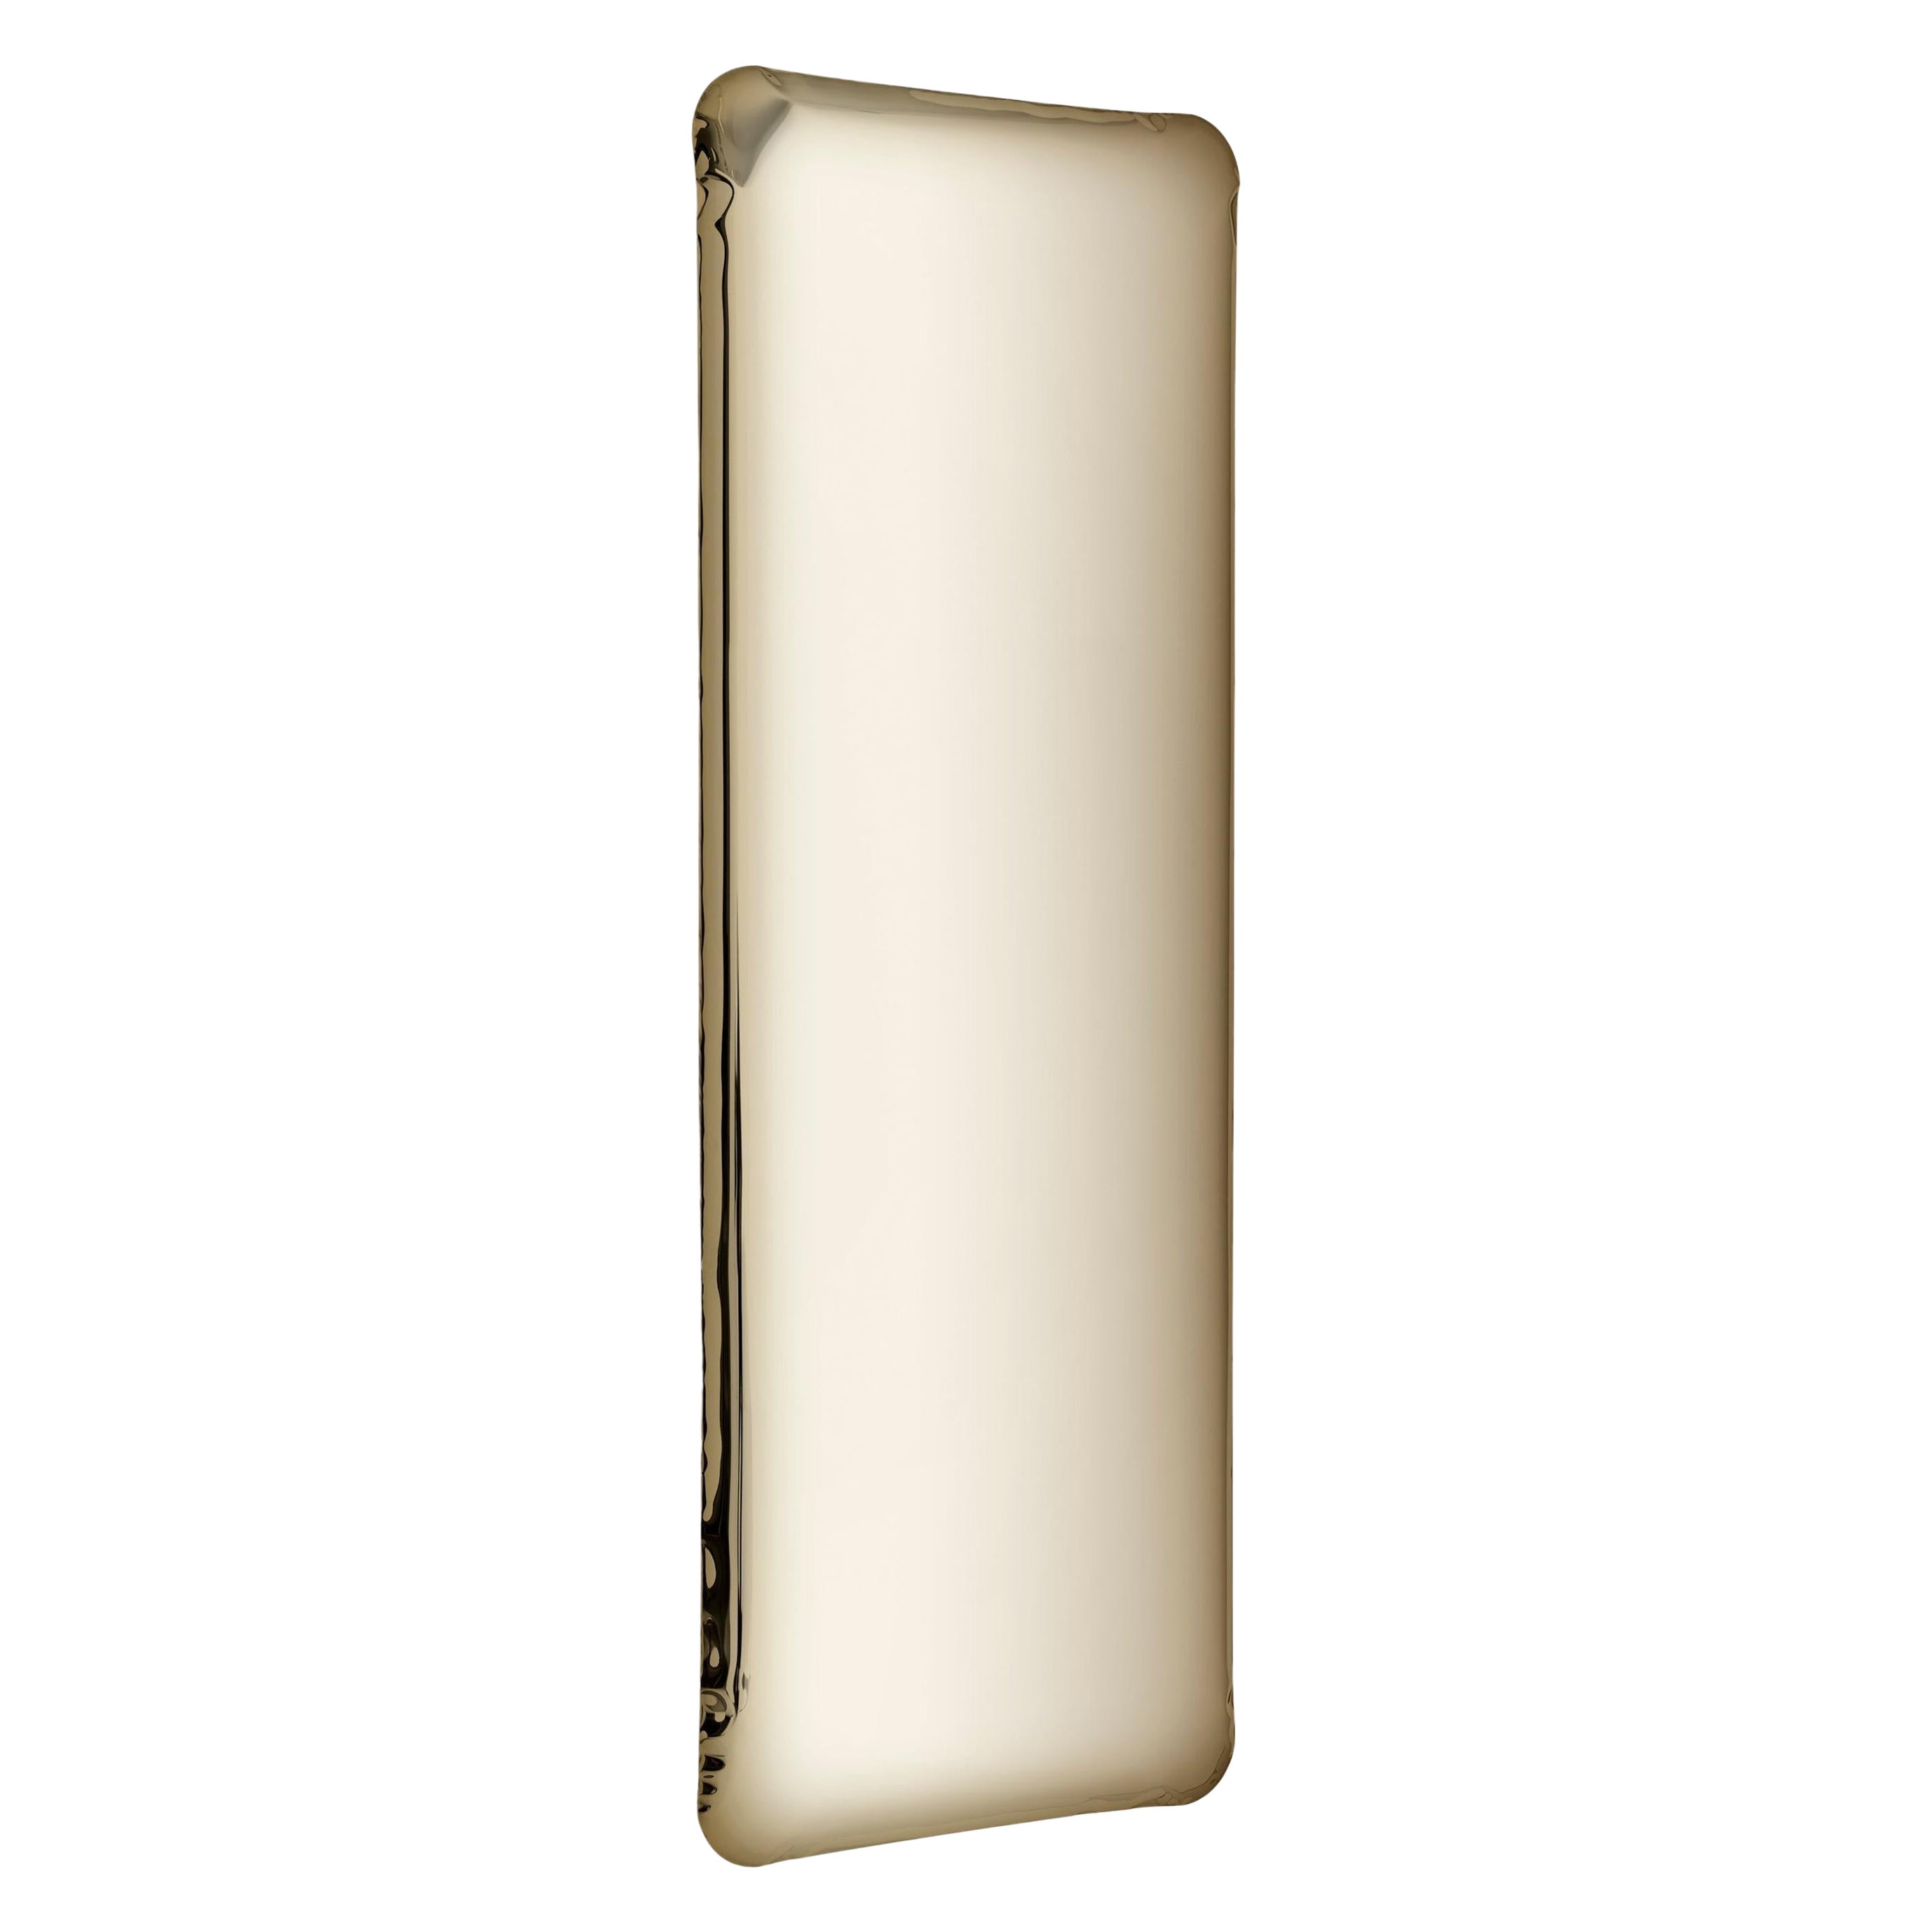 Light Gold Tafla Q1 Sculptural Wall Mirror by Zieta For Sale